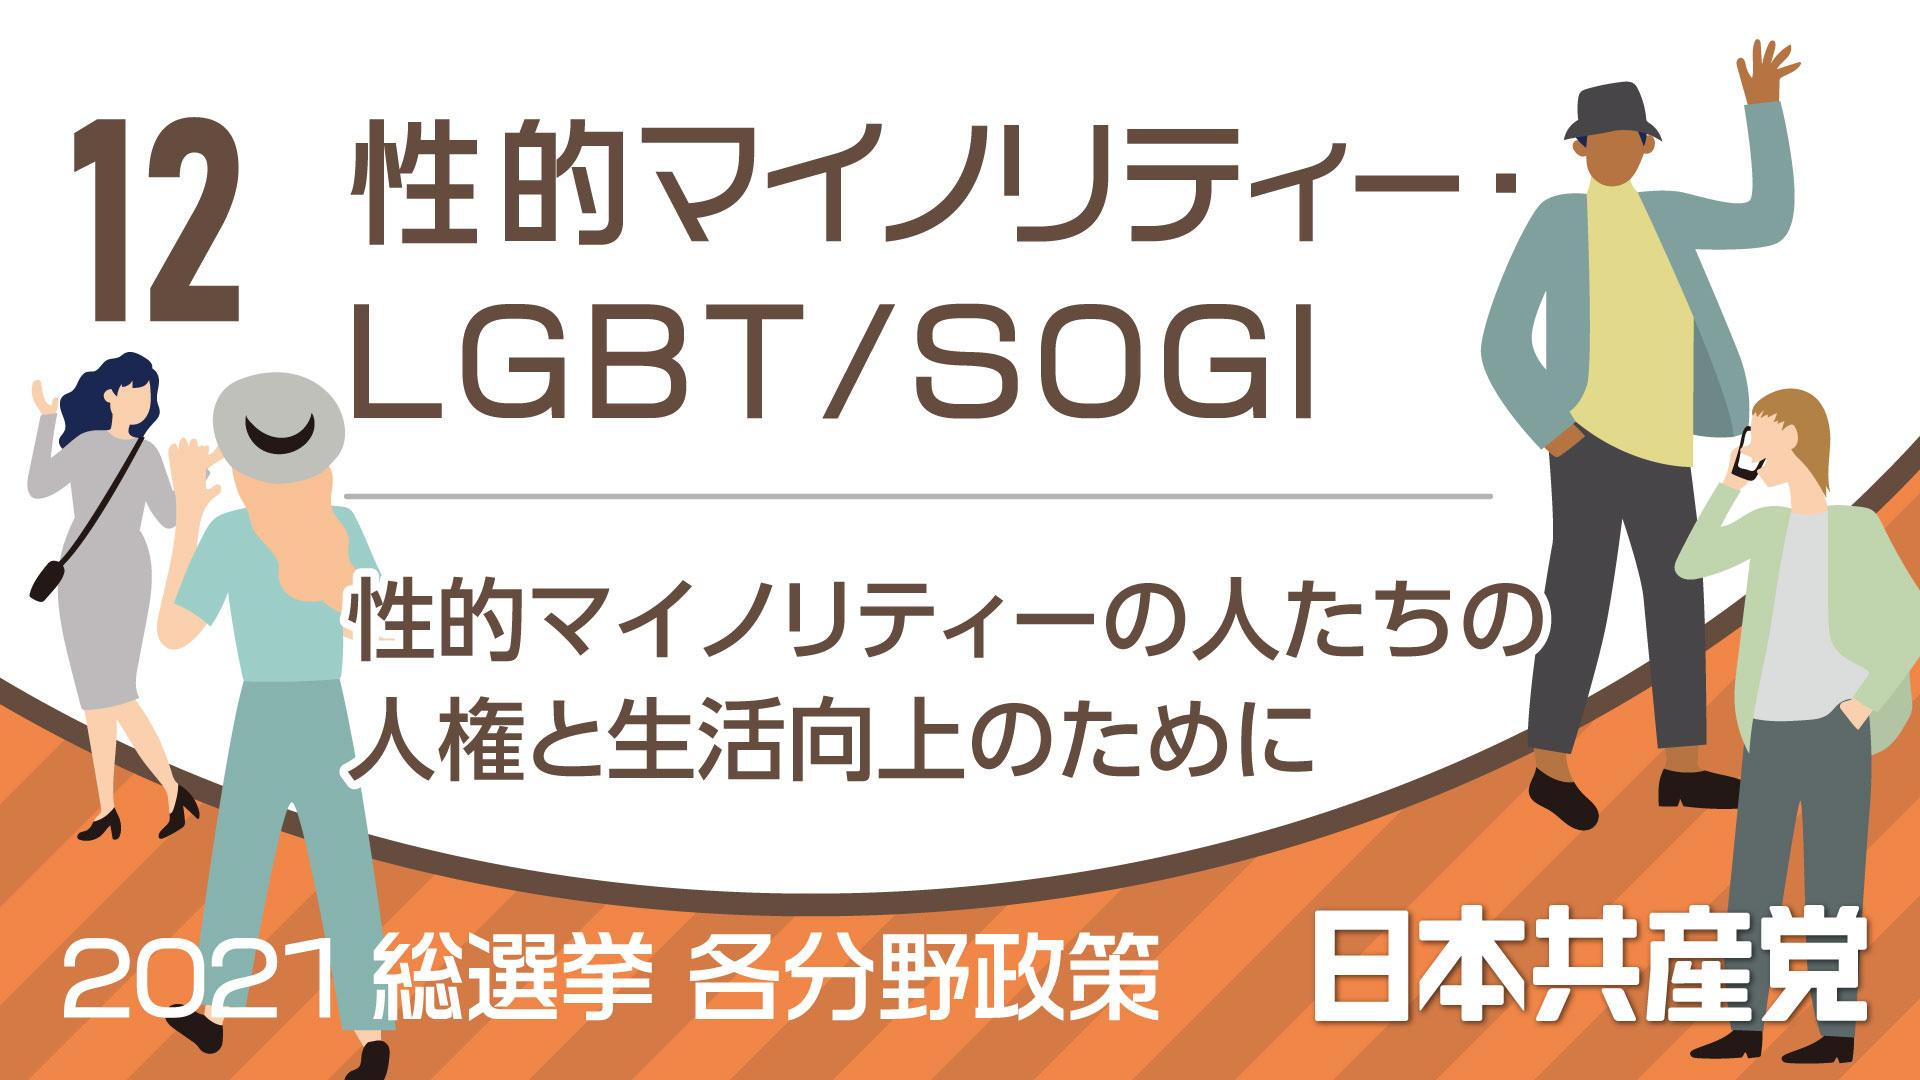 １２、性的マイノリティー・LGBT/SOGI　2021総選挙